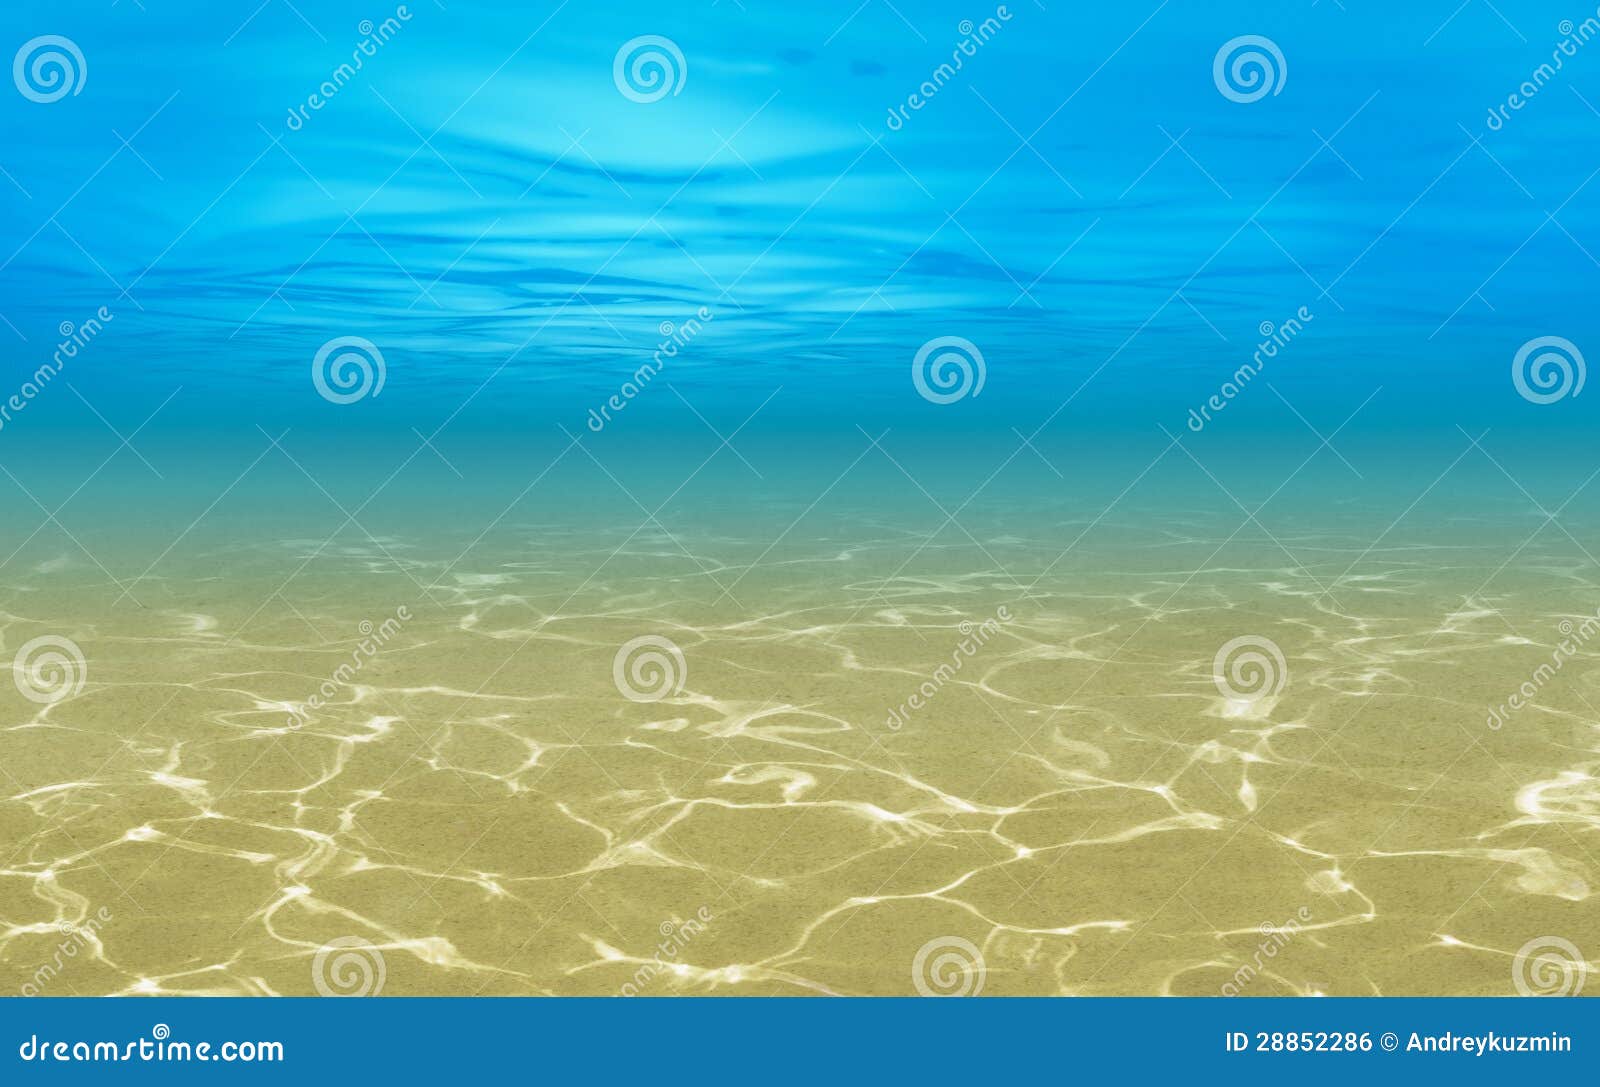 ocean shallow underwater background